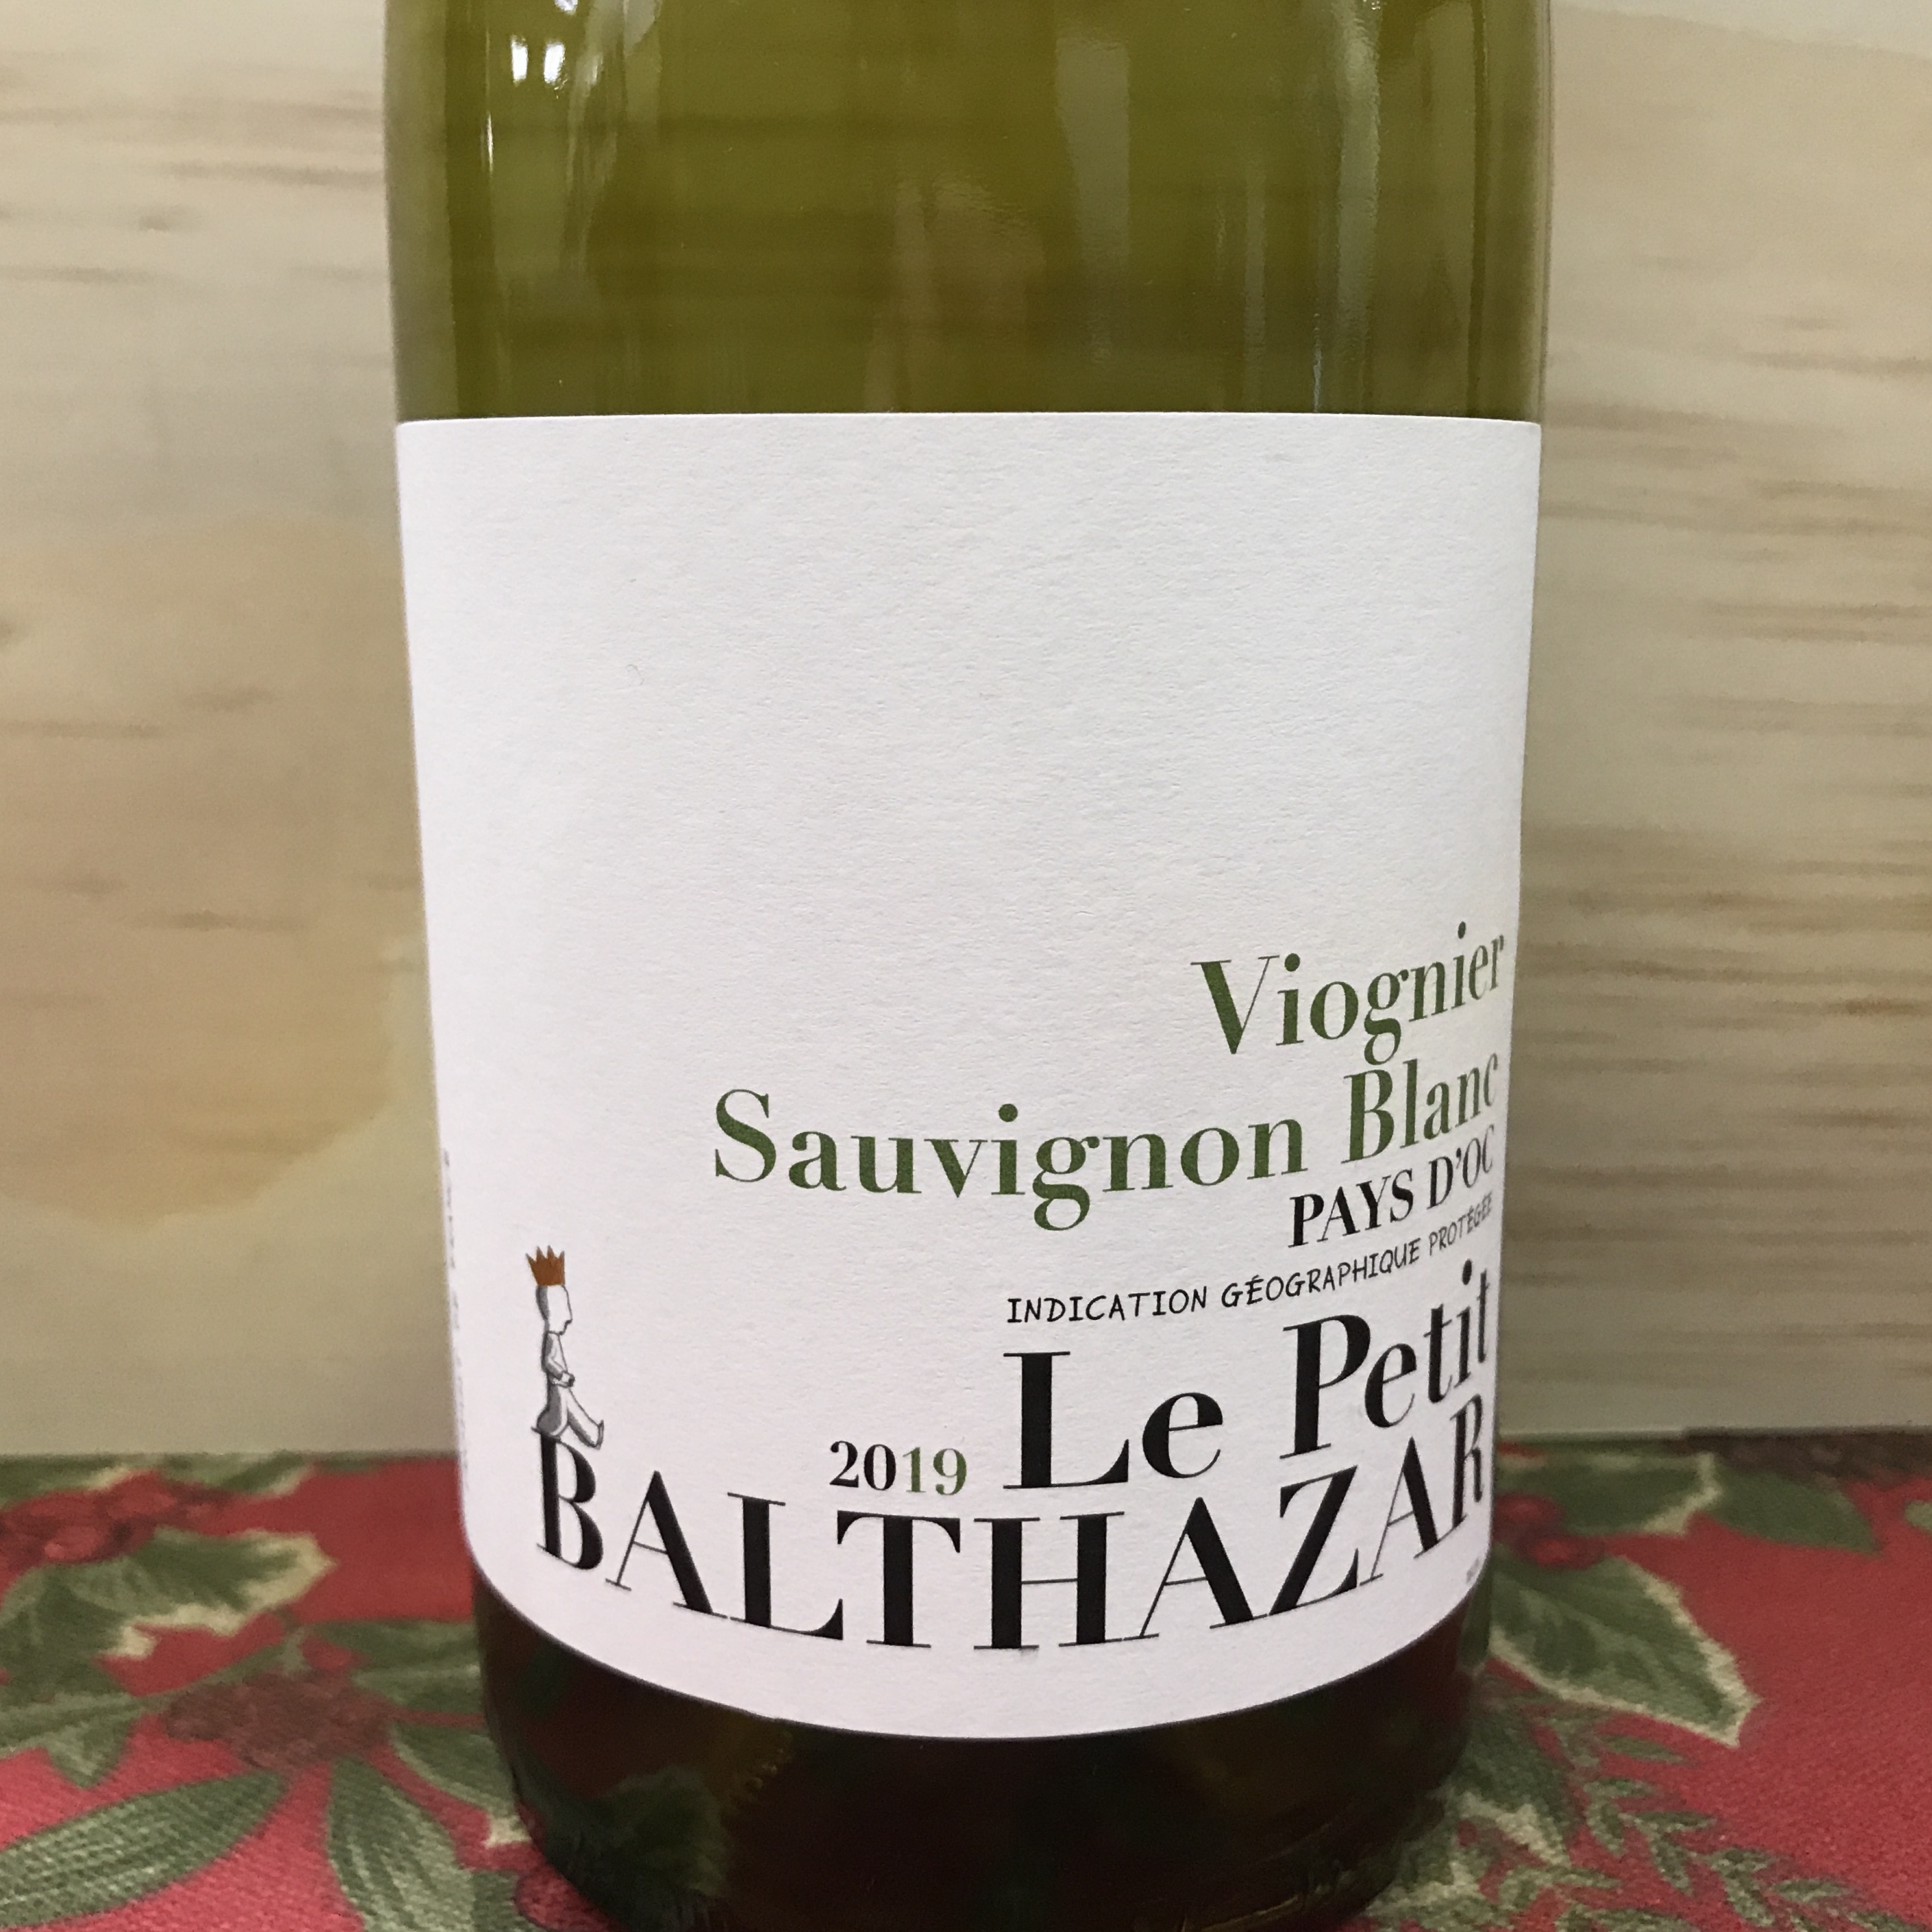 Le Petit Balthazar Sauvignon Blanc/Viognier pays d'oc 2020